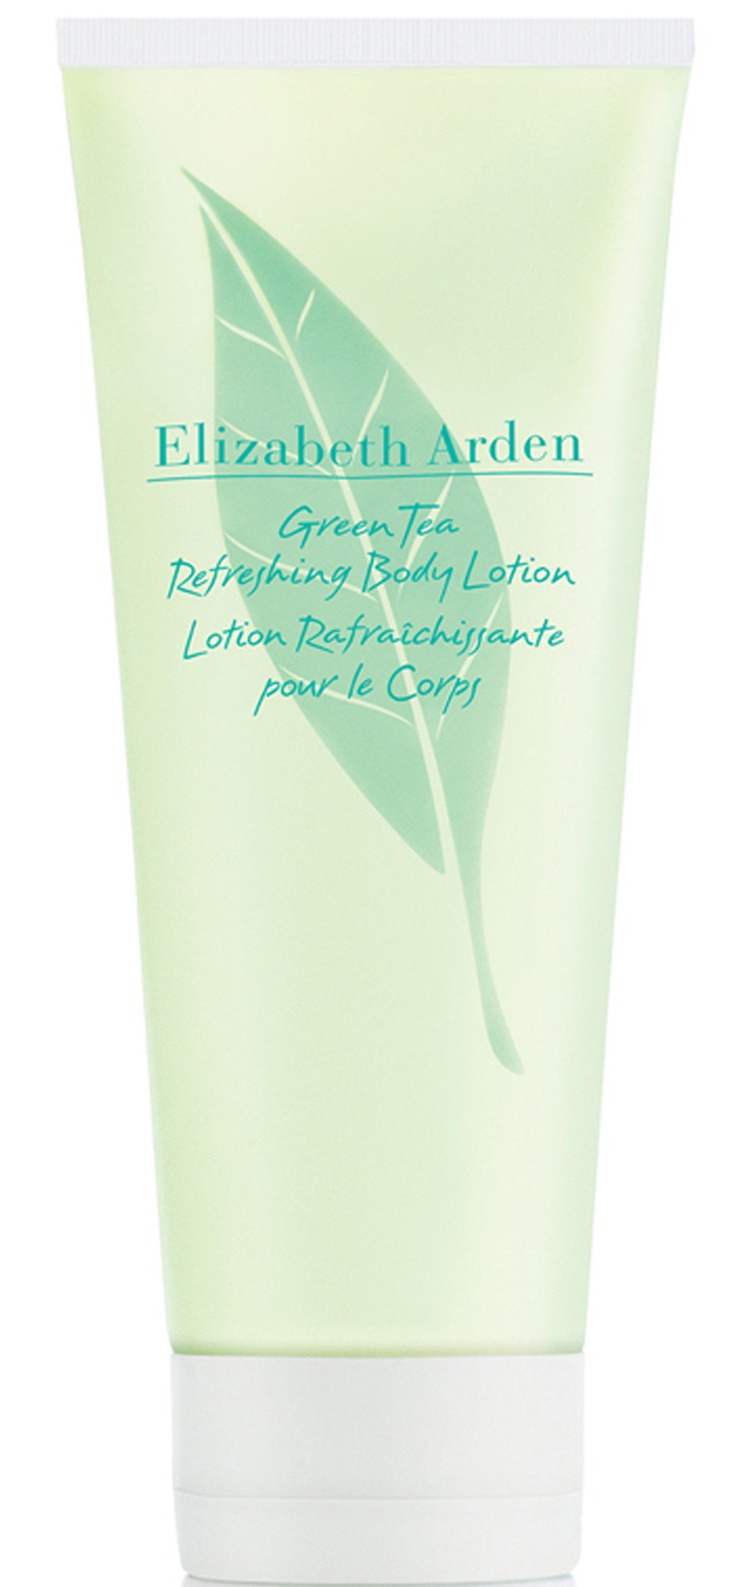 Elizabeth Arden Green Tea Refreshing Body Lotion